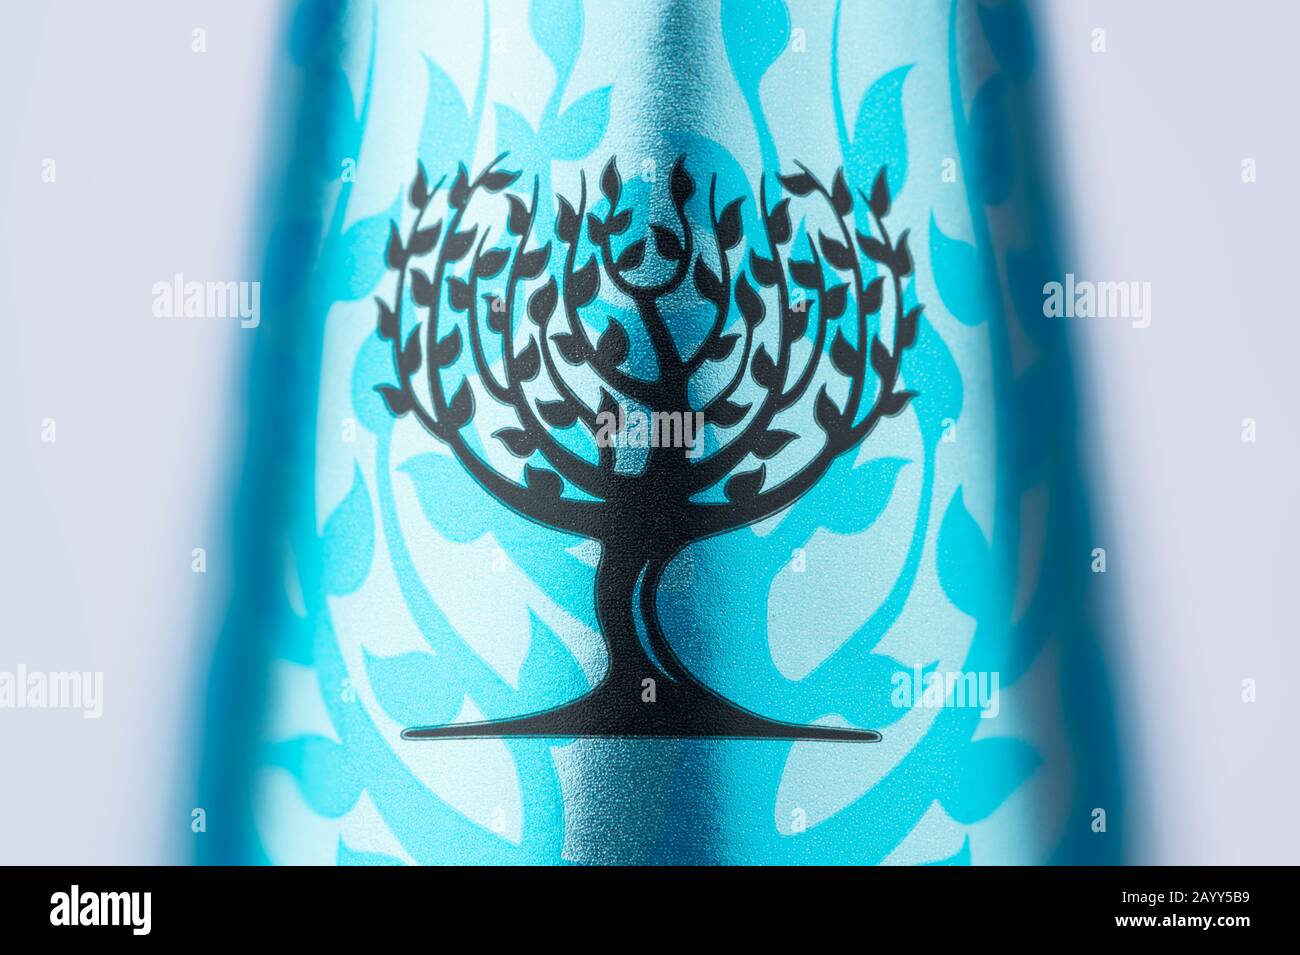 Un primer plano del logotipo tónico fiebre-árbol que se encuentra en el cuello de una botella, disparado sobre un fondo blanco. Foto de stock